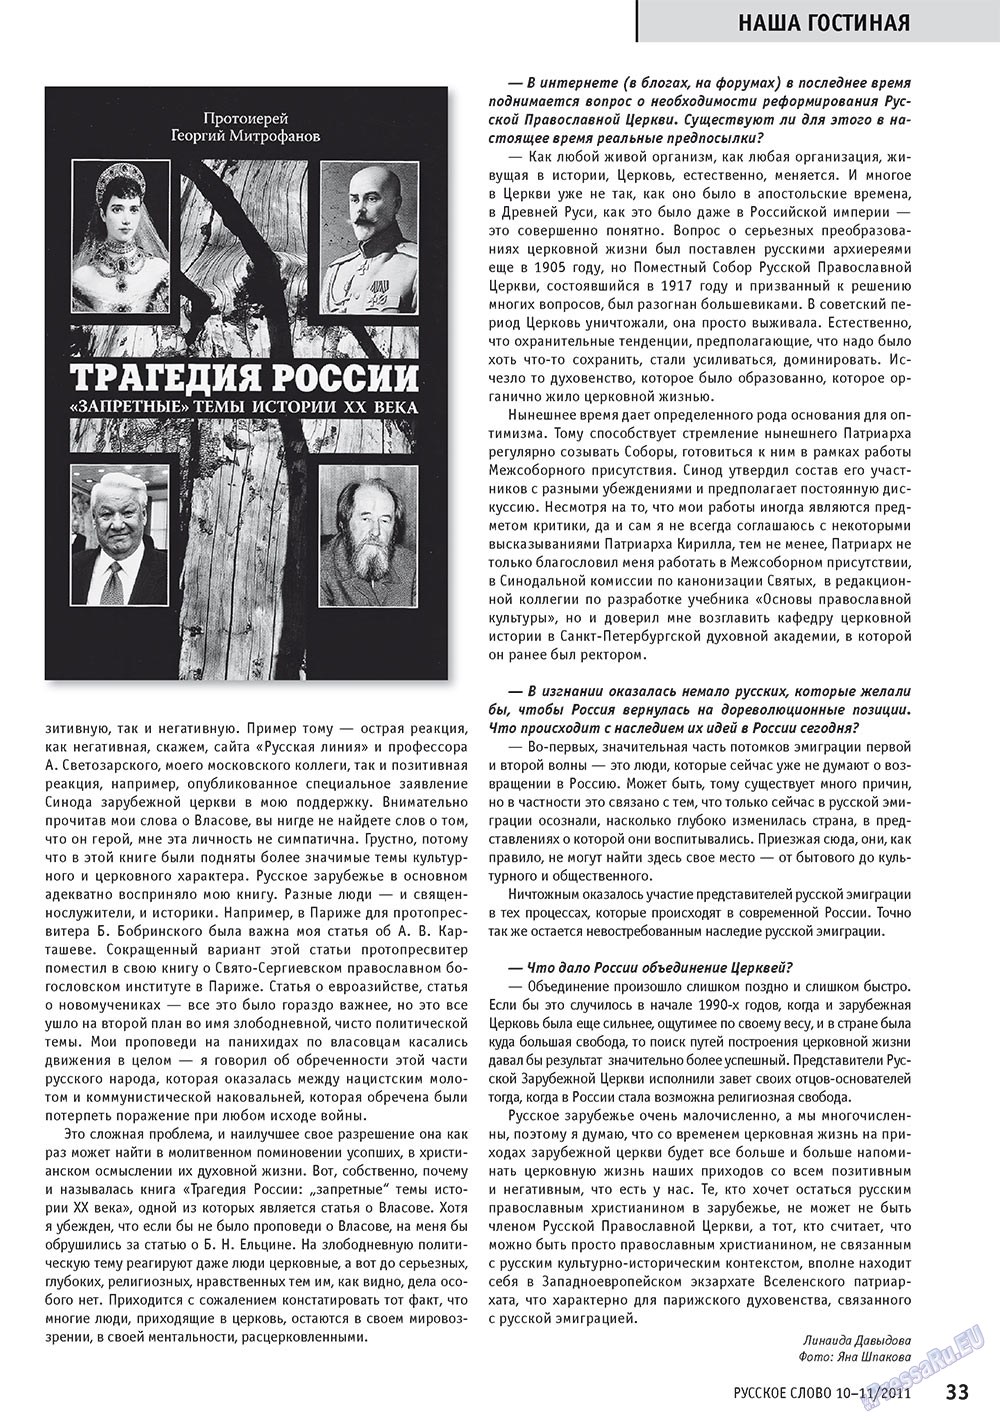 Русское слово, журнал. 2011 №10 стр.35